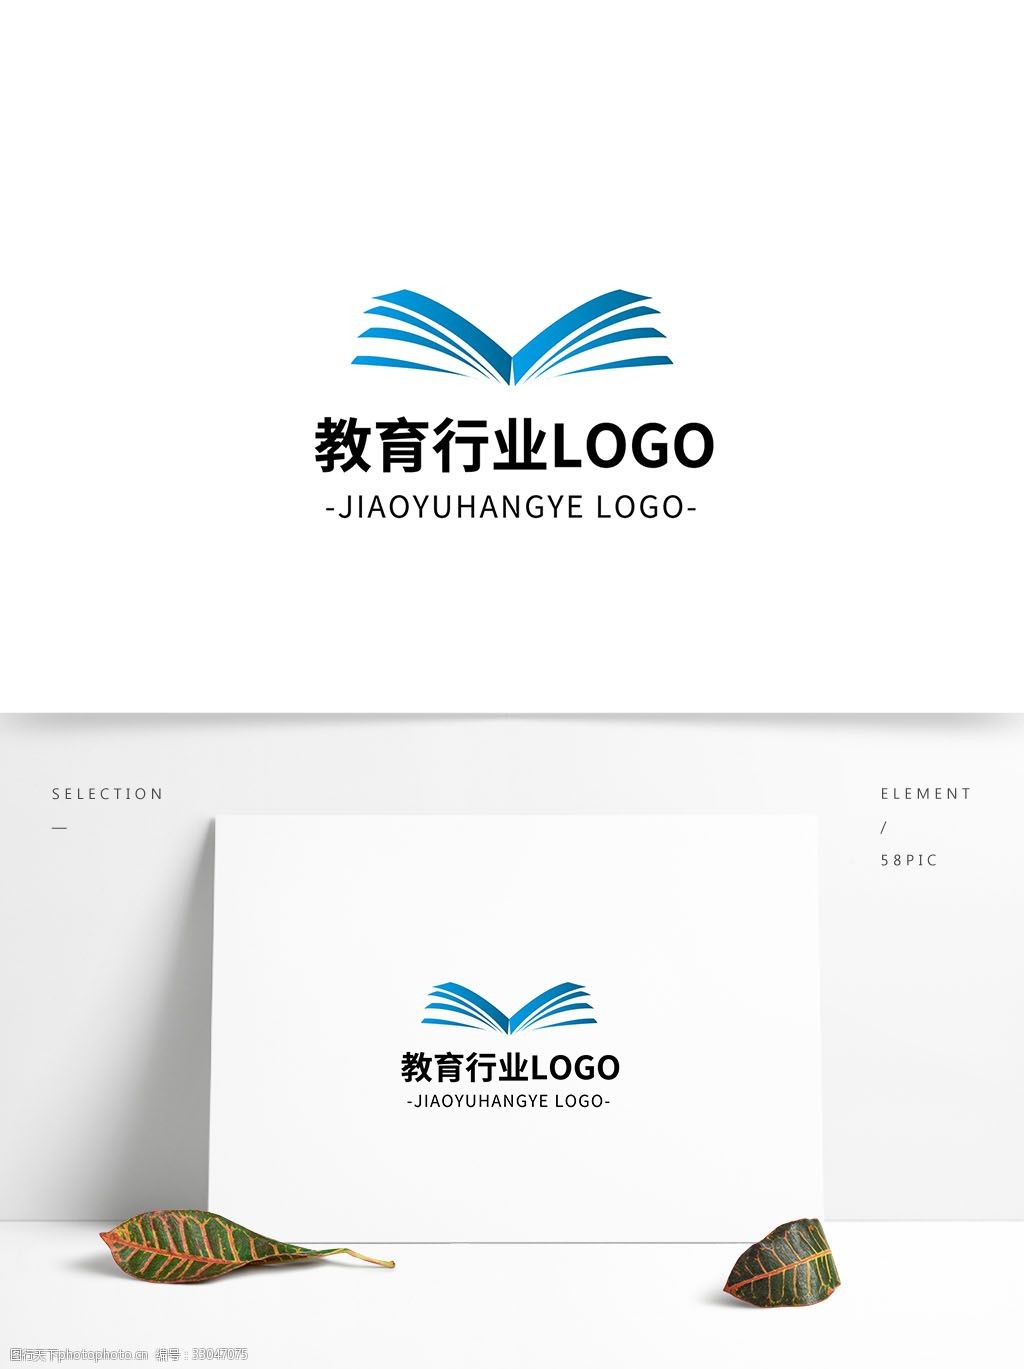 简约大气创意教育行业logo标志设计 蓝色 矢量 图形 大气 几何 书本